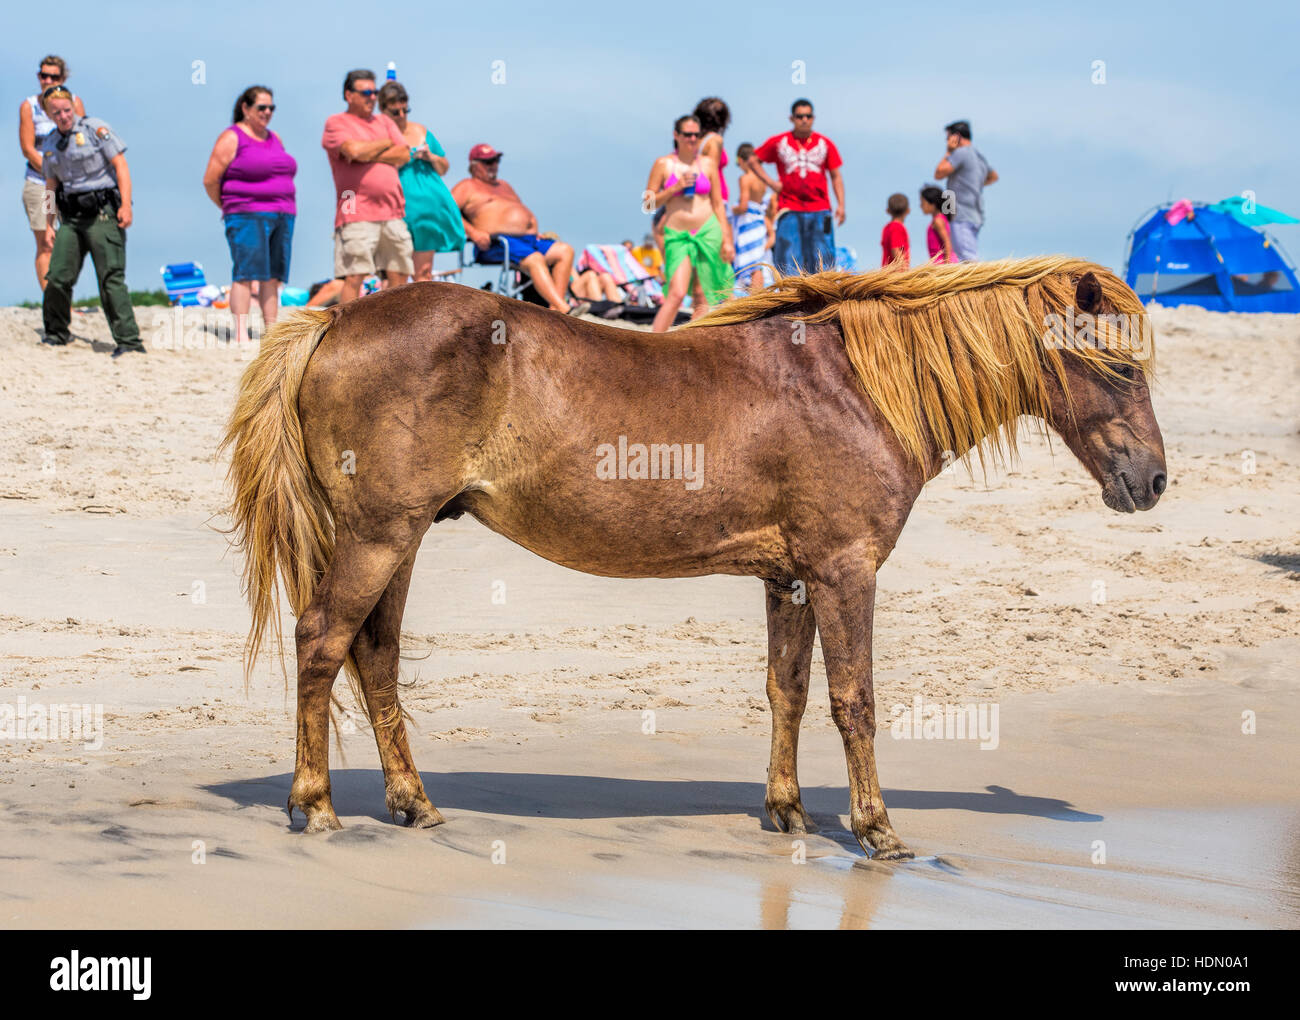 Ein wildes Pony, Pferd, Assateague Island, Maryland, USA am Strand. Es gibt Leute am Strand beobachten das Pony. Stockfoto